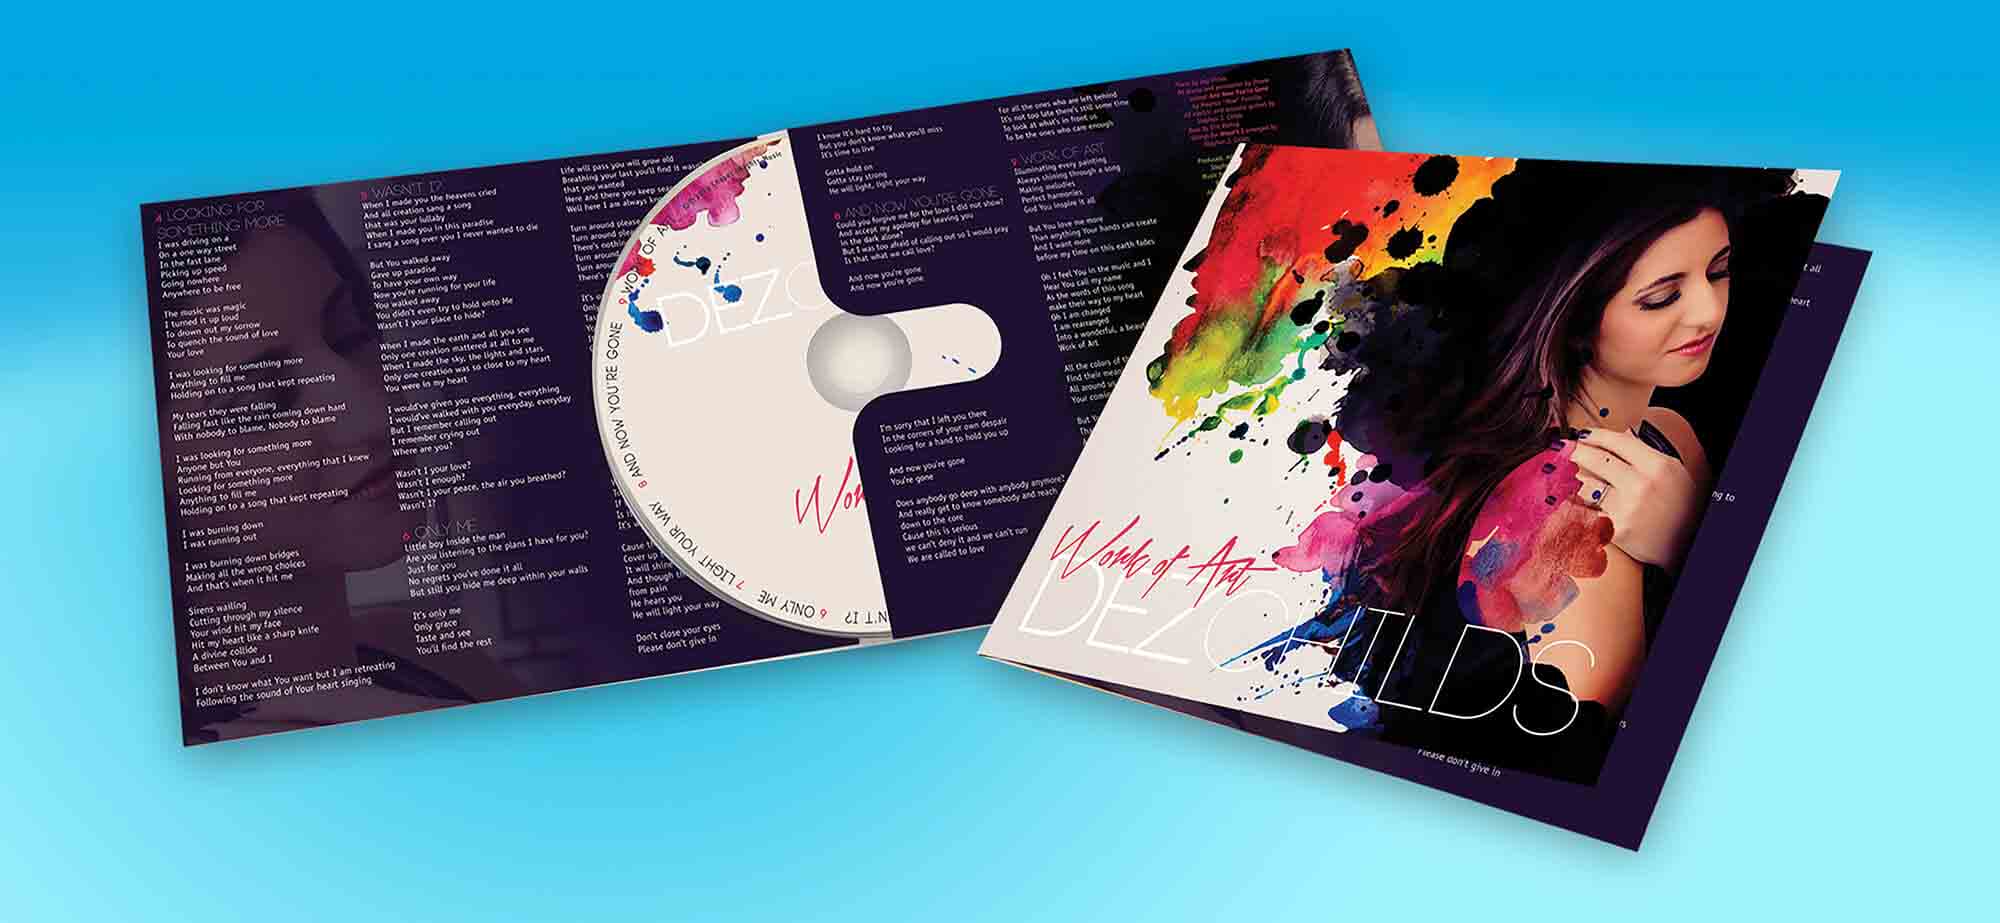 Cd Design Dvd Design Album Cover Design The Design Studio